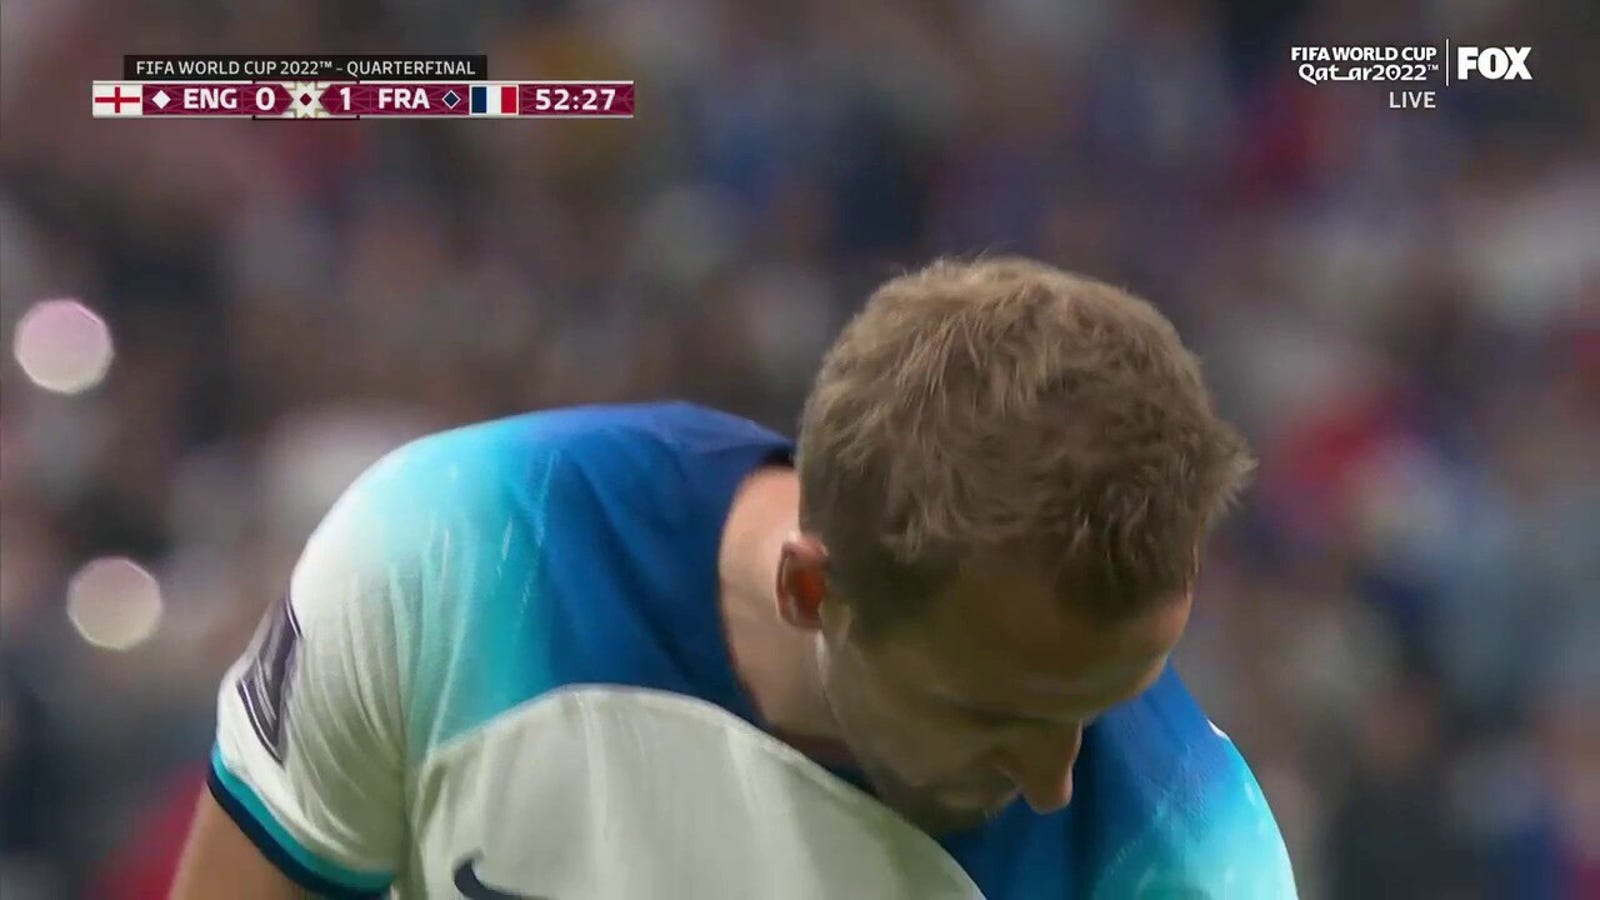 Harry Kane segna un gol contro la Francia in 52 minuti